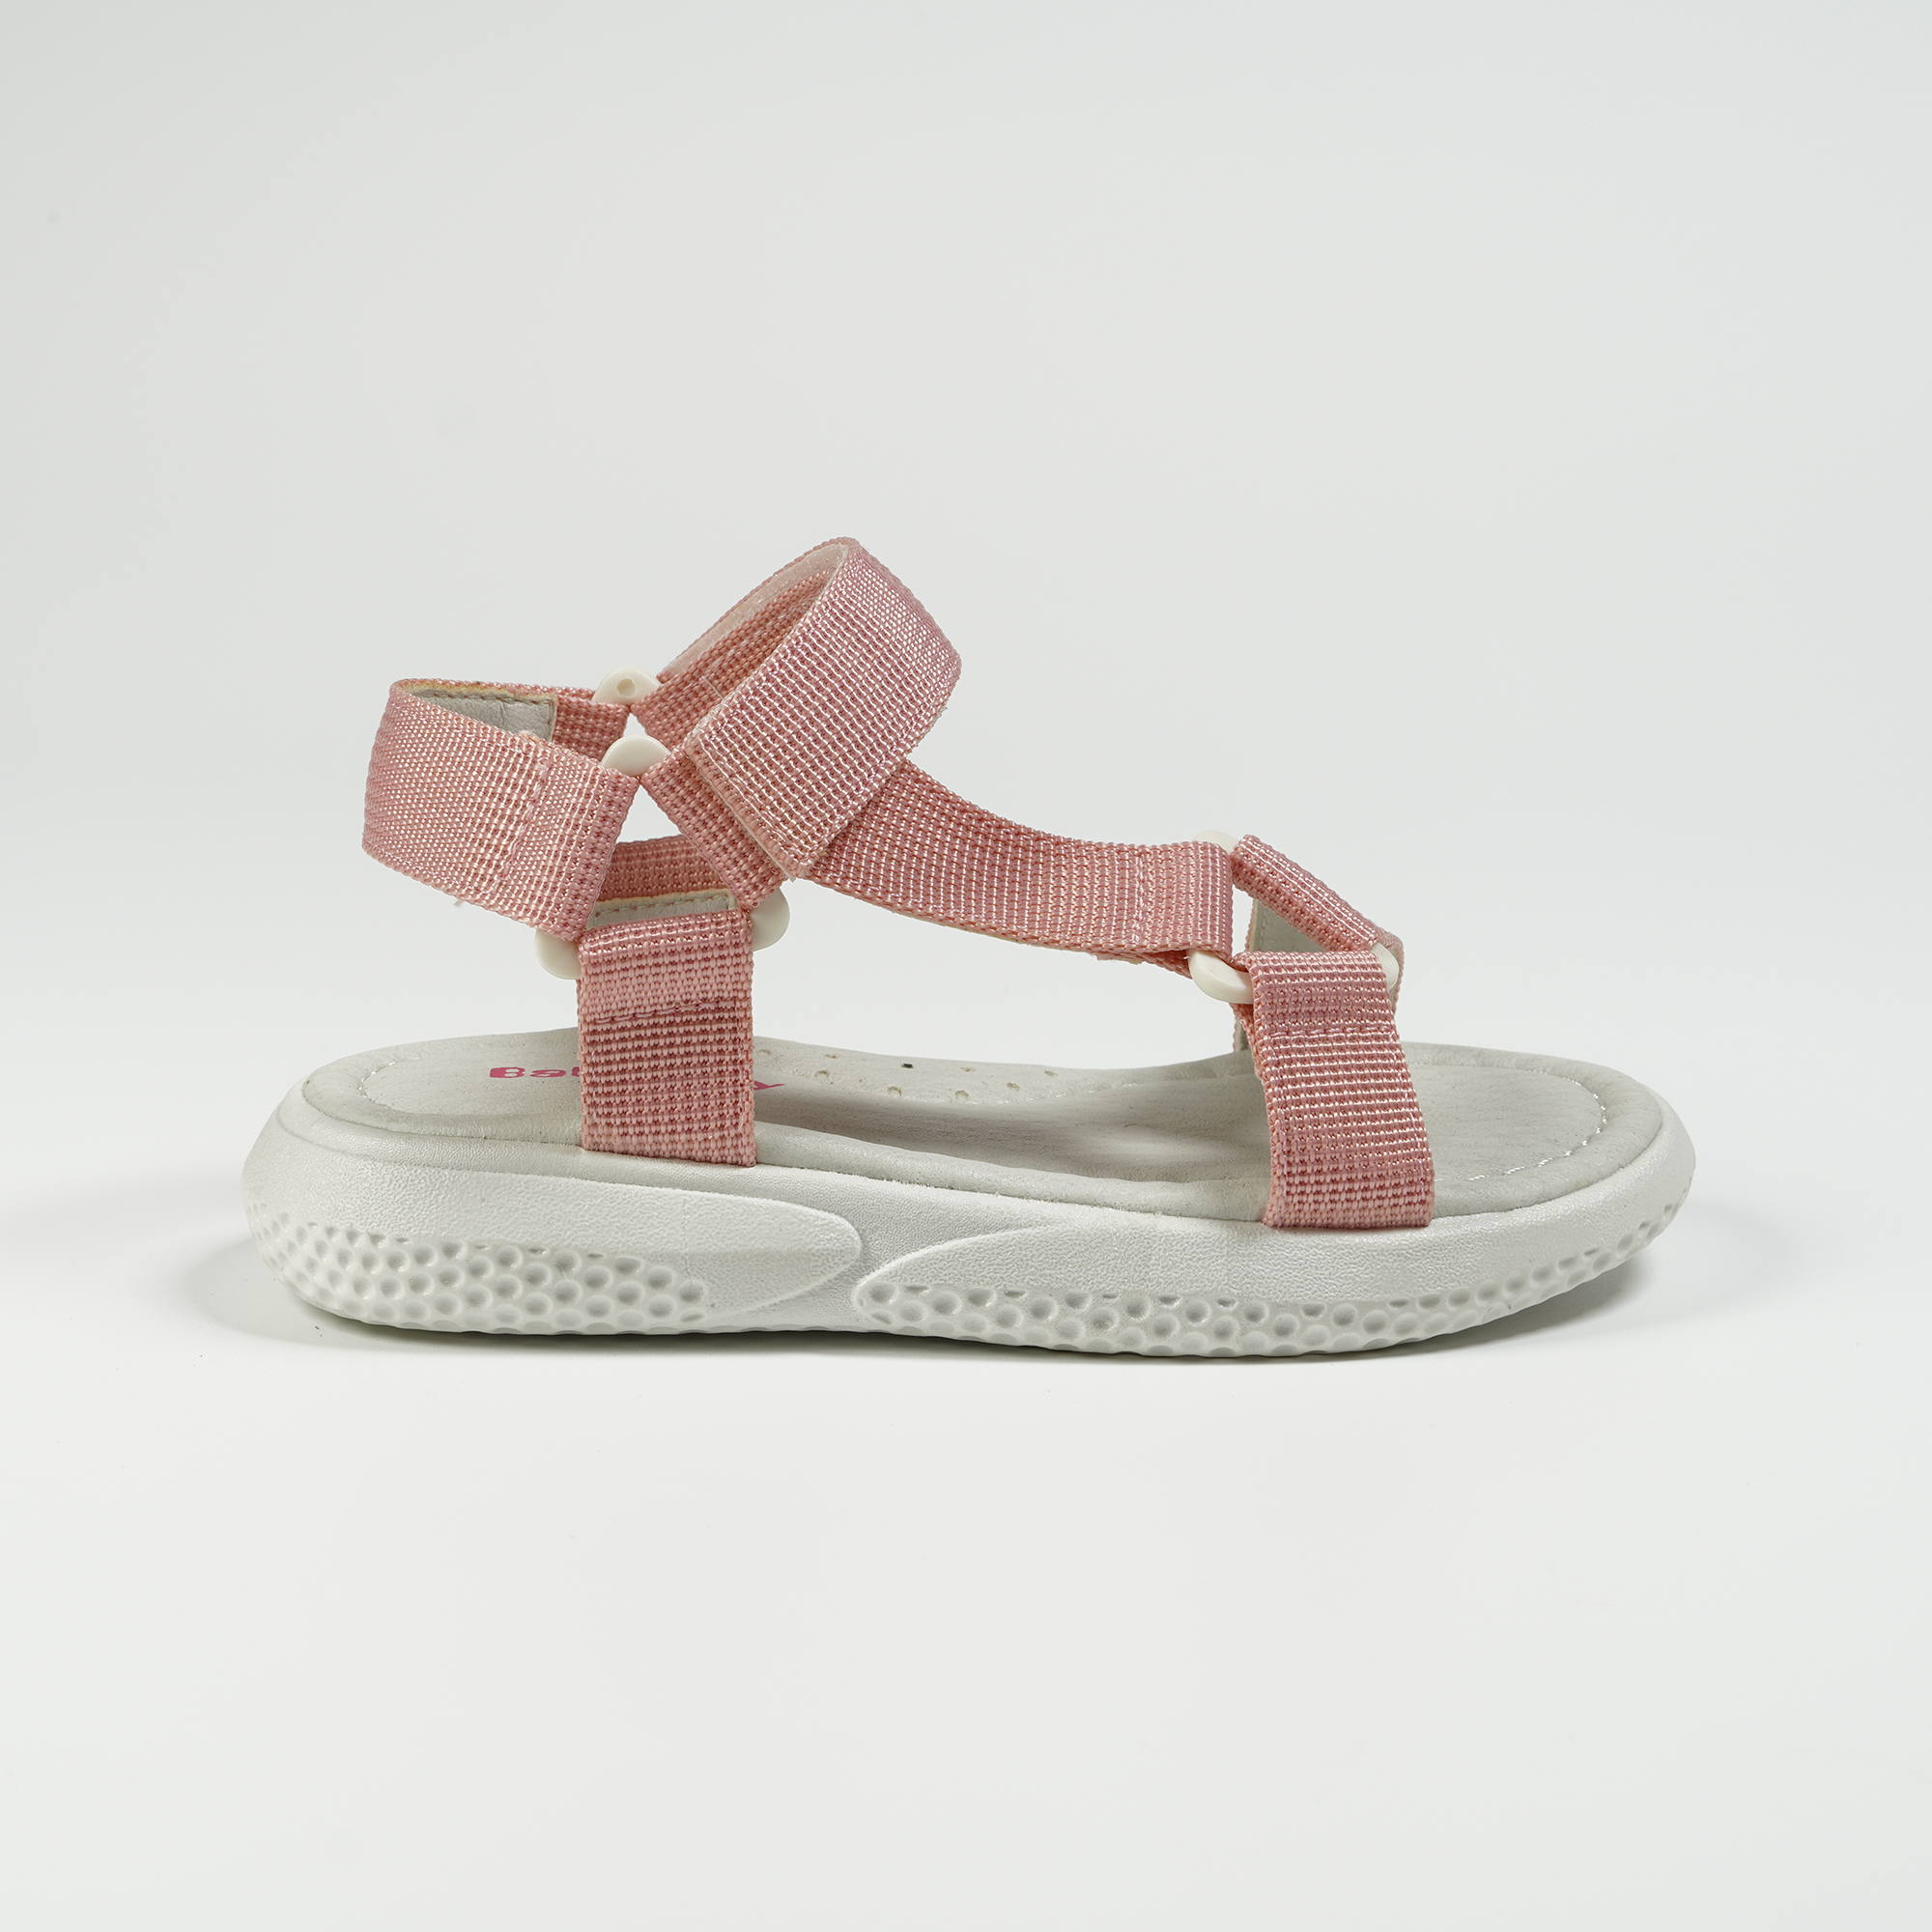 Somera hazarda kuranta sporta modaj sandaloj marŝantaj sandaloj rozkolora velkro malpeza platformo ne-glitaj sandaloj